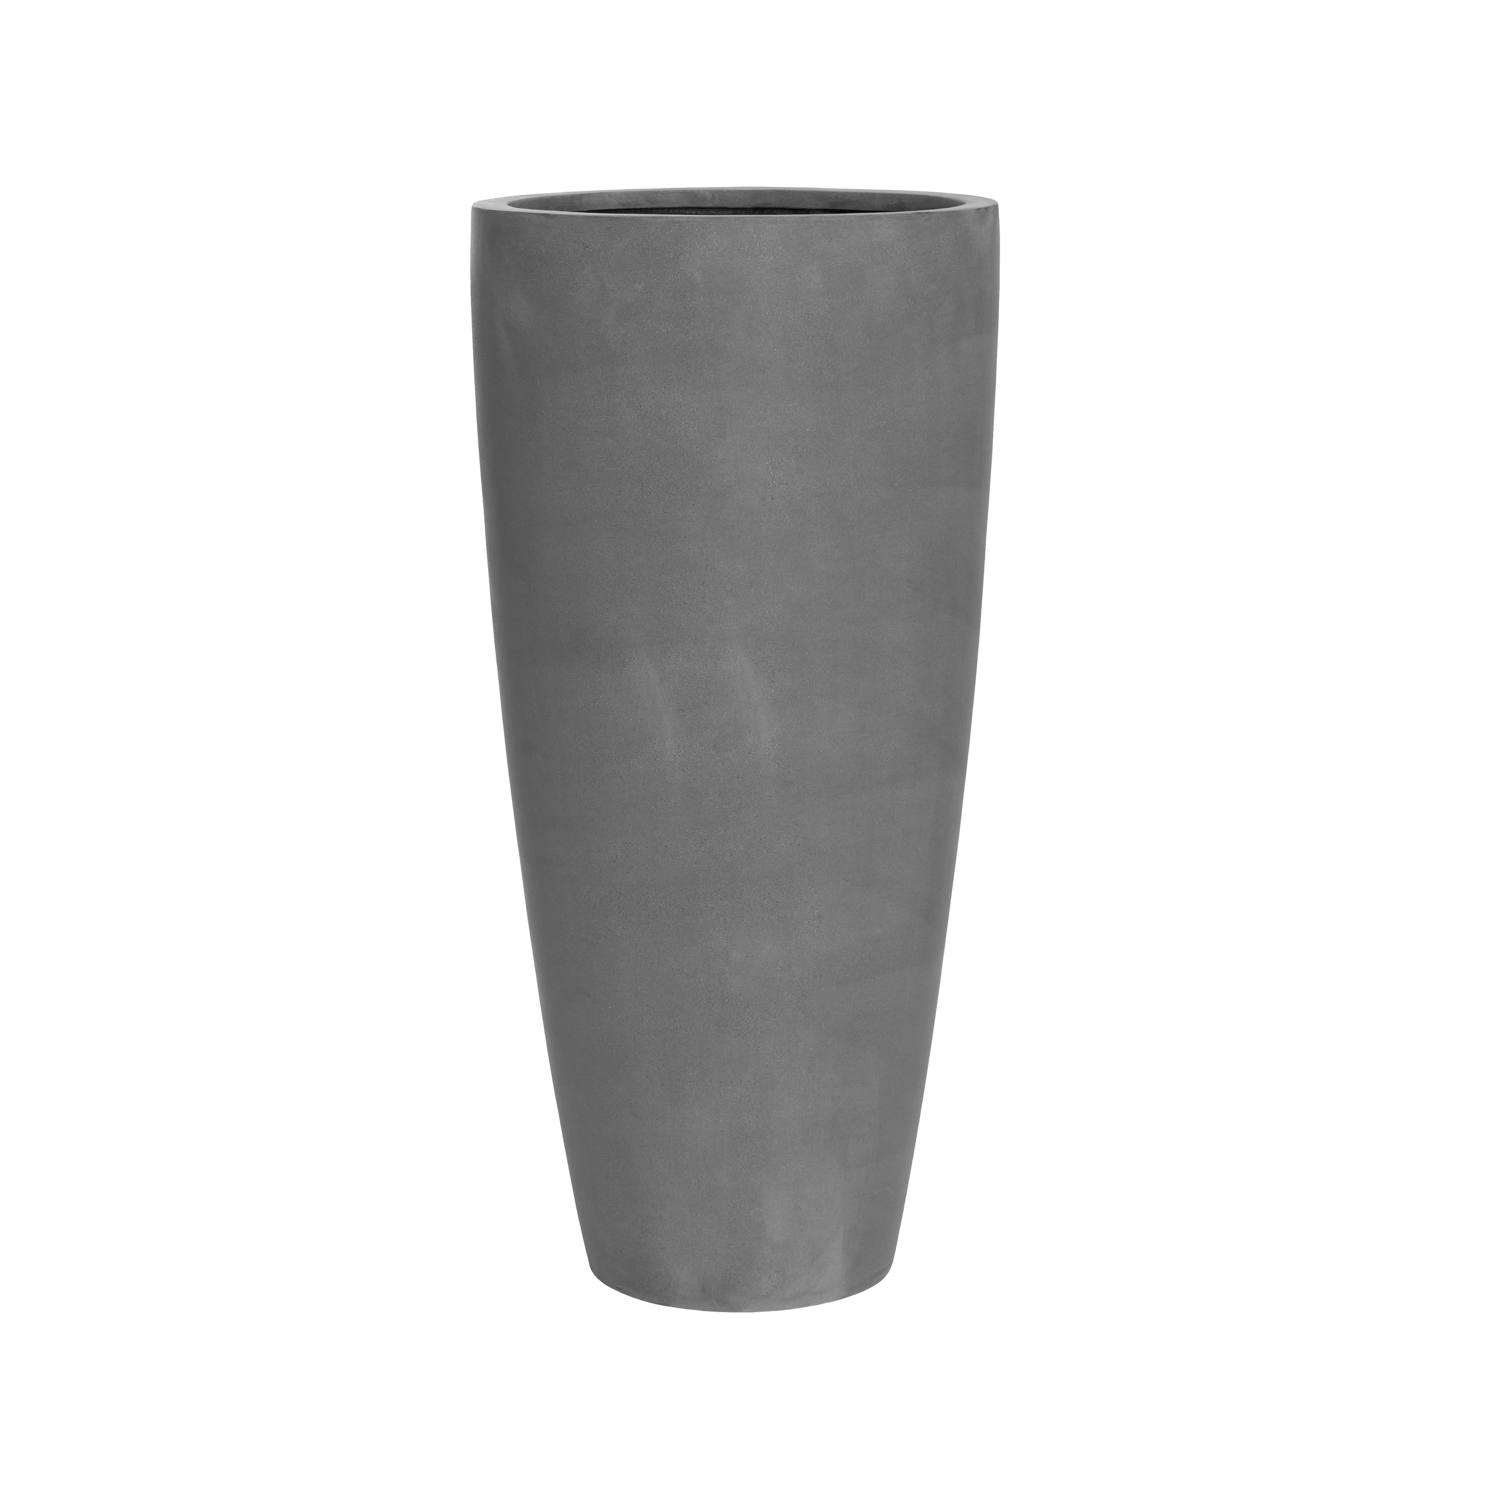 Květináč Dax, barva šedá, více velikostí - PotteryPots Velikost: XL - v. 100 cm, ⌀ 47 cm